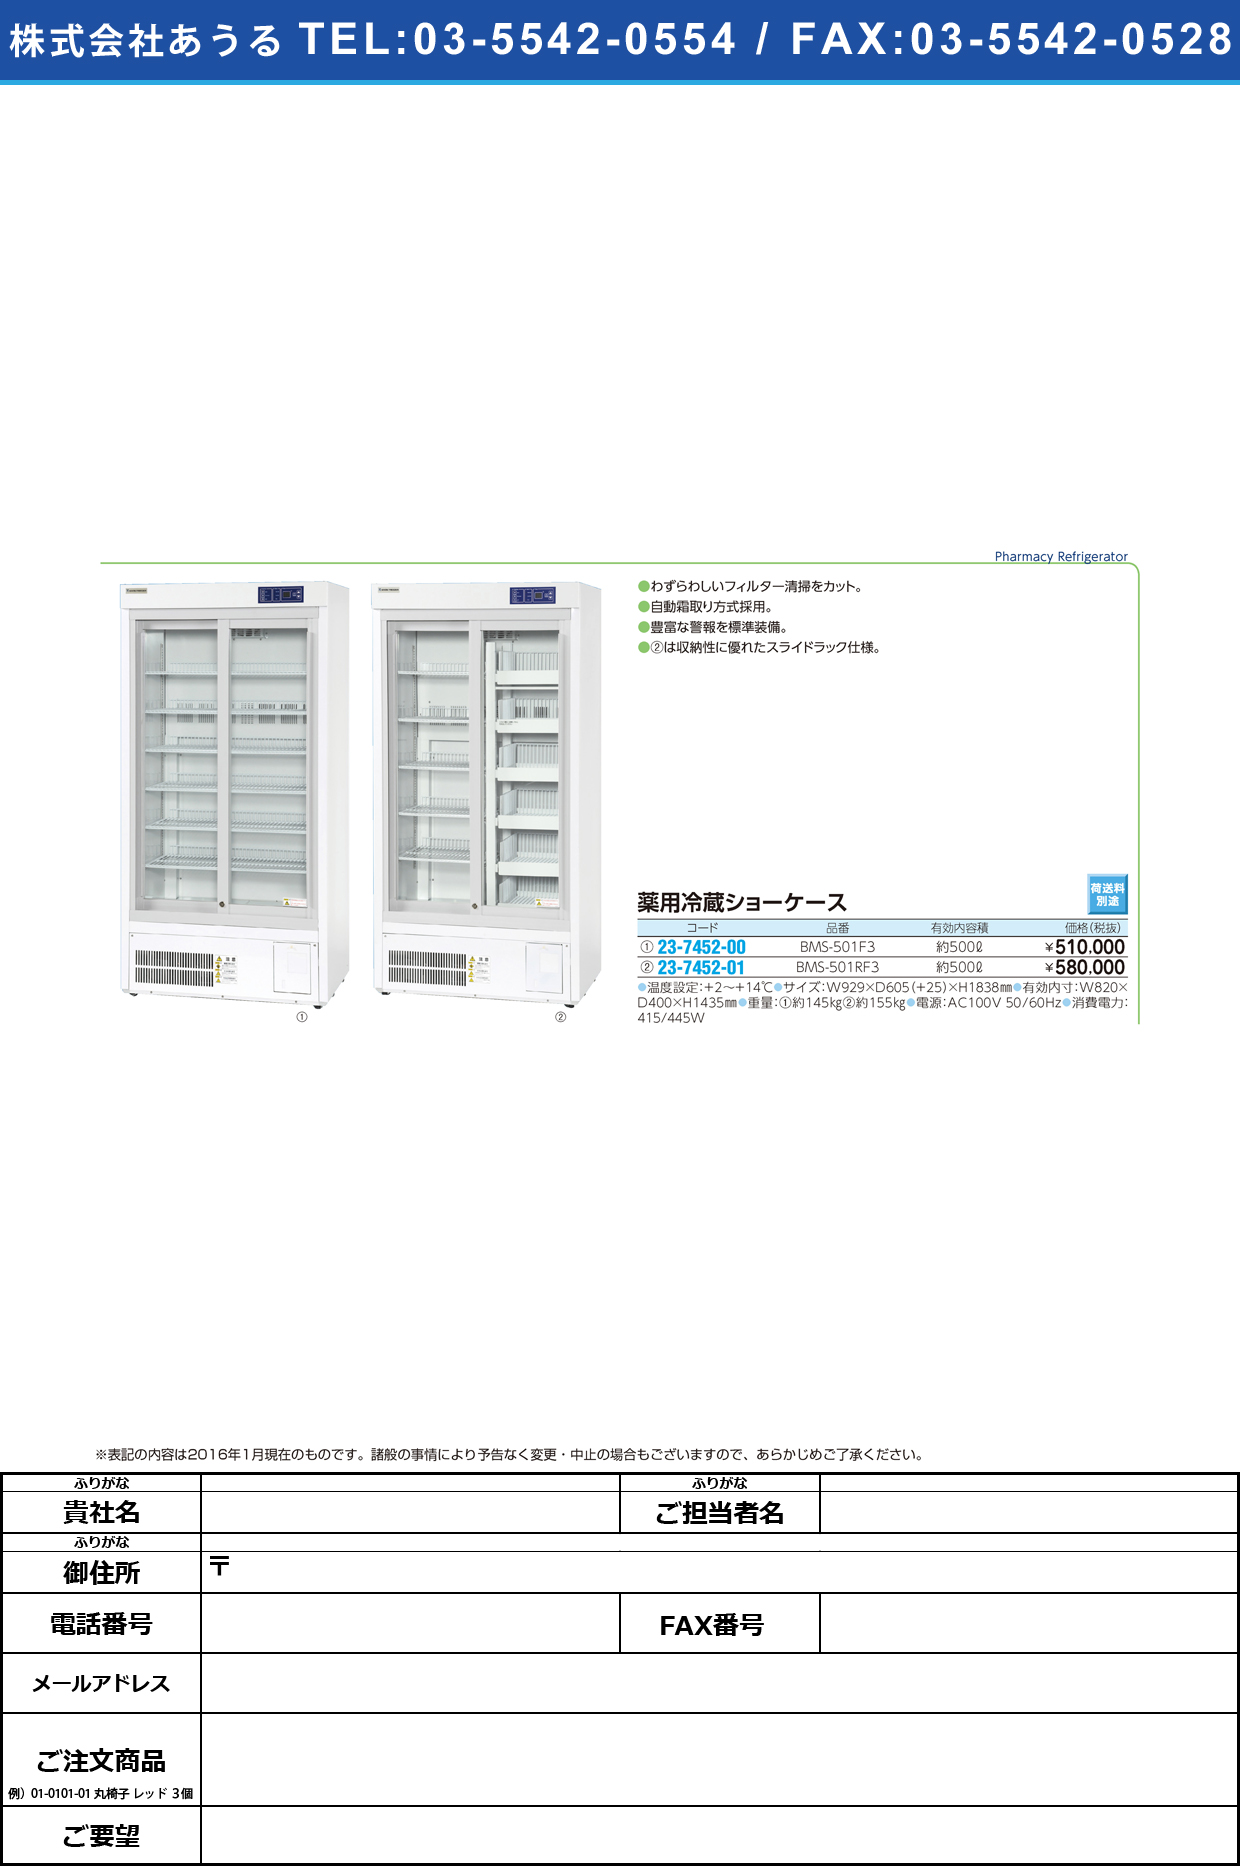 (23-7452-00)薬用冷蔵ショーケース（網棚仕様） ﾔｸﾖｳﾚｲｿﾞｳｼｮｰｹｰｽ BMS-501F3【1台単位】【2016年カタログ商品】